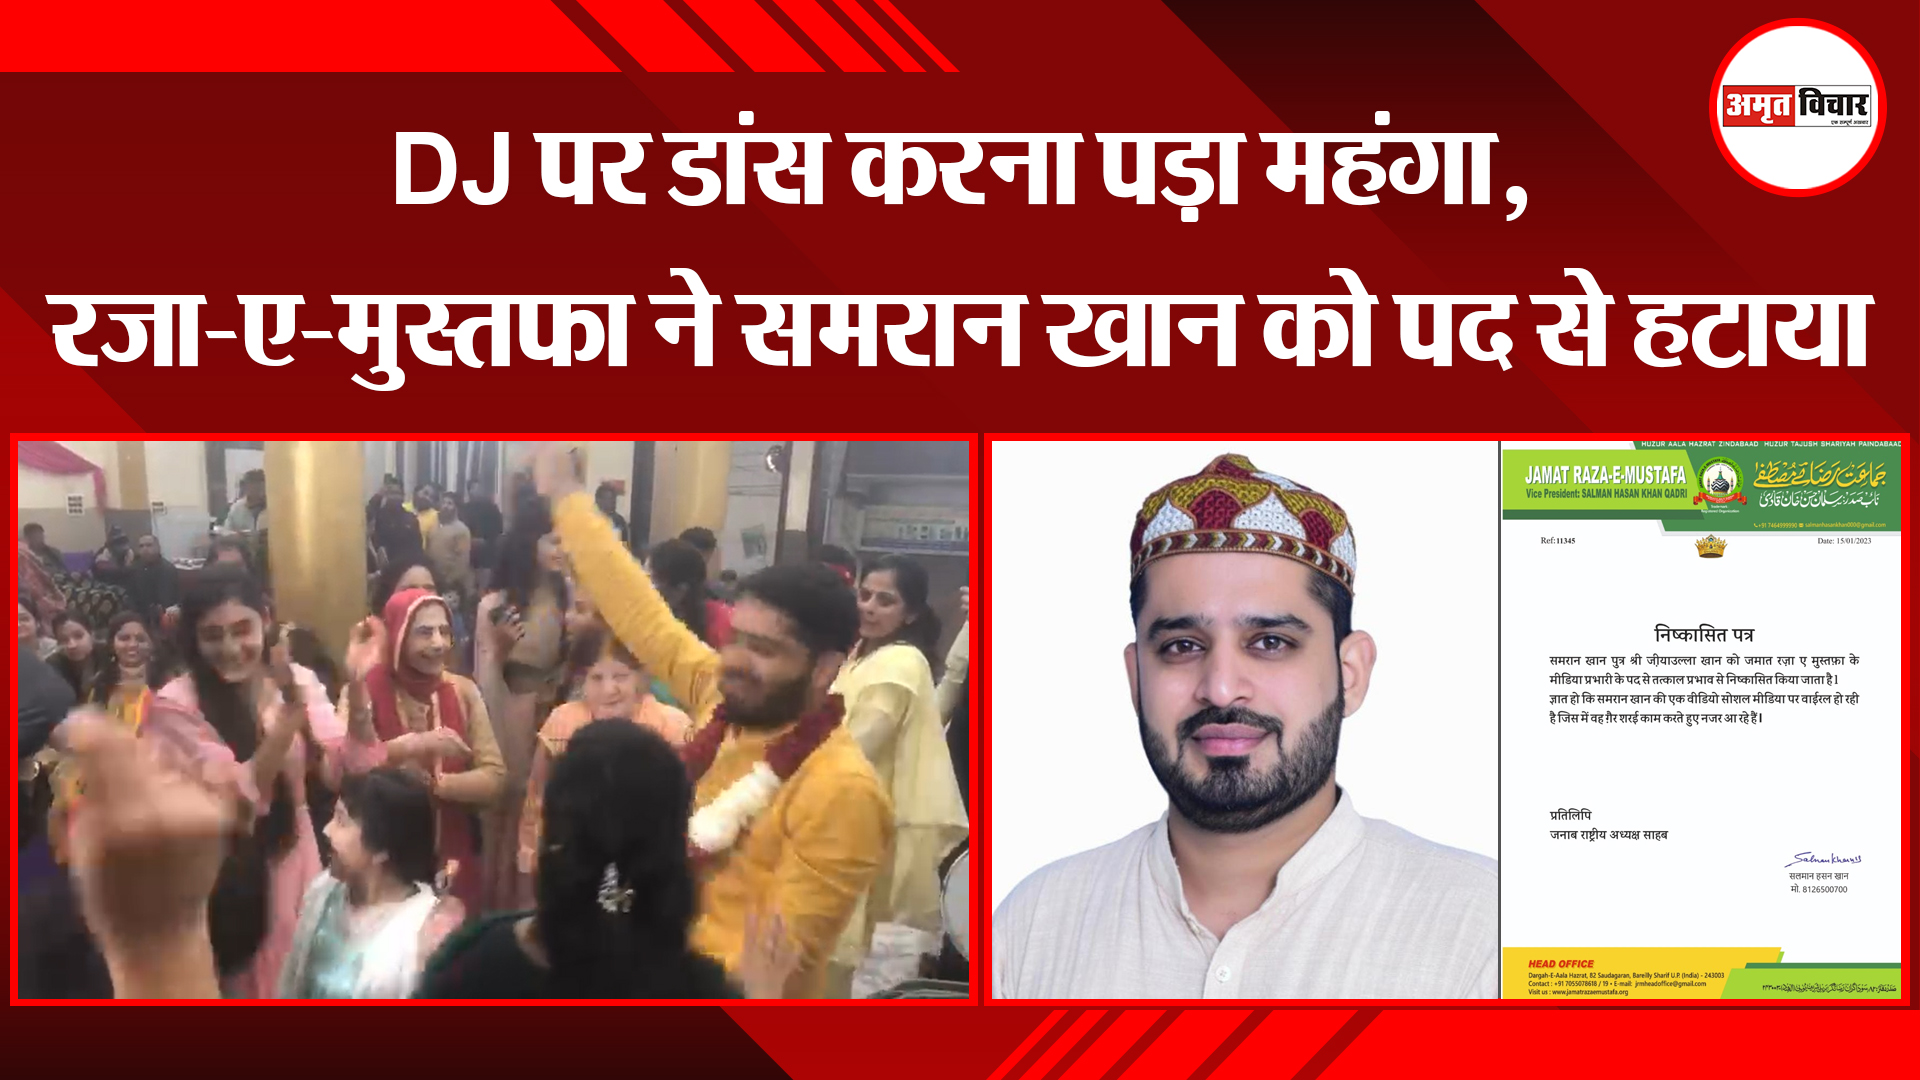 बरेली: DJ पर डांस करना पड़ा महंगा, रजा-ए-मुस्तफा ने समरान खान को पद से हटाया